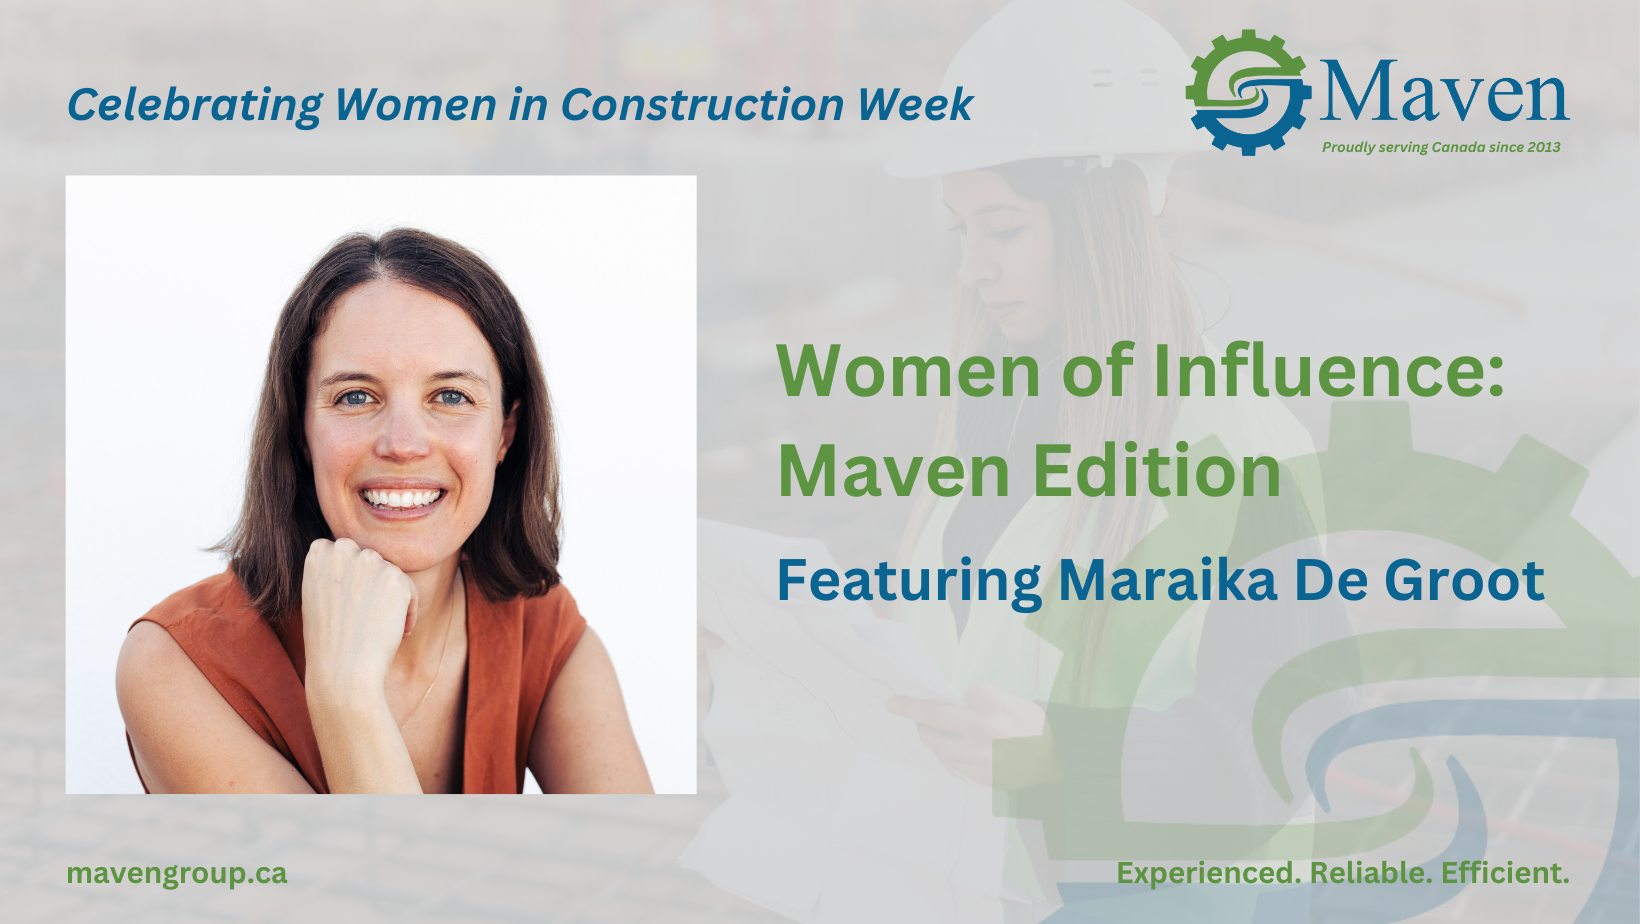 Women of Influence: Maven Edition (Featuring Maraika De Groot)